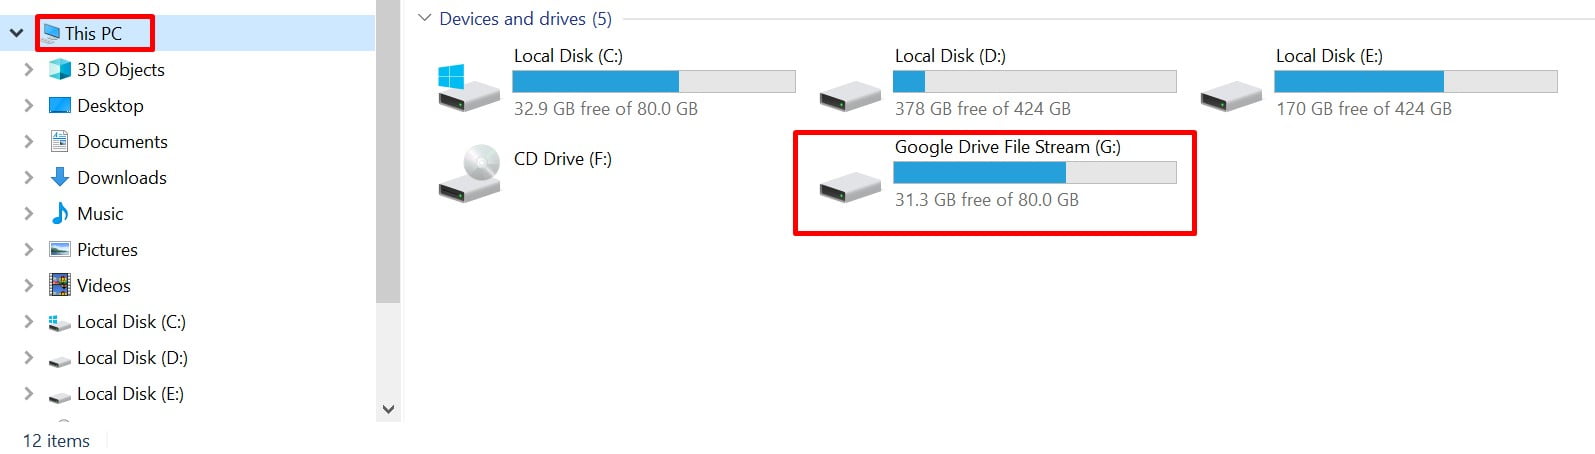 Google Drive File Stream là gì? Cách tạo ổ đĩa ảo bằng cài đặt Google Drive File Stream 16